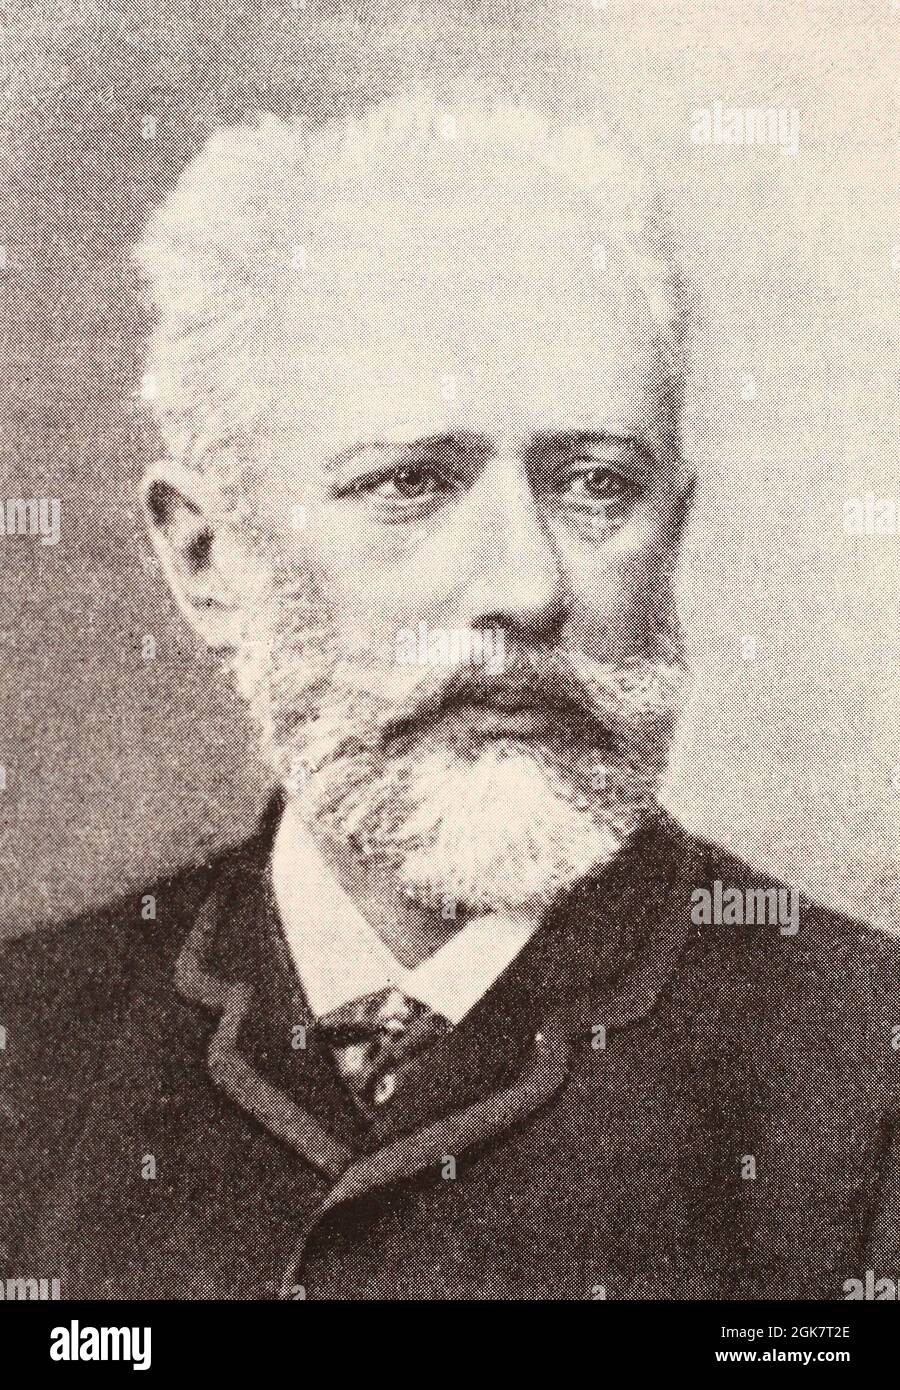 Pyotr Ilyich Tchaikovsky in 1888. Stock Photo